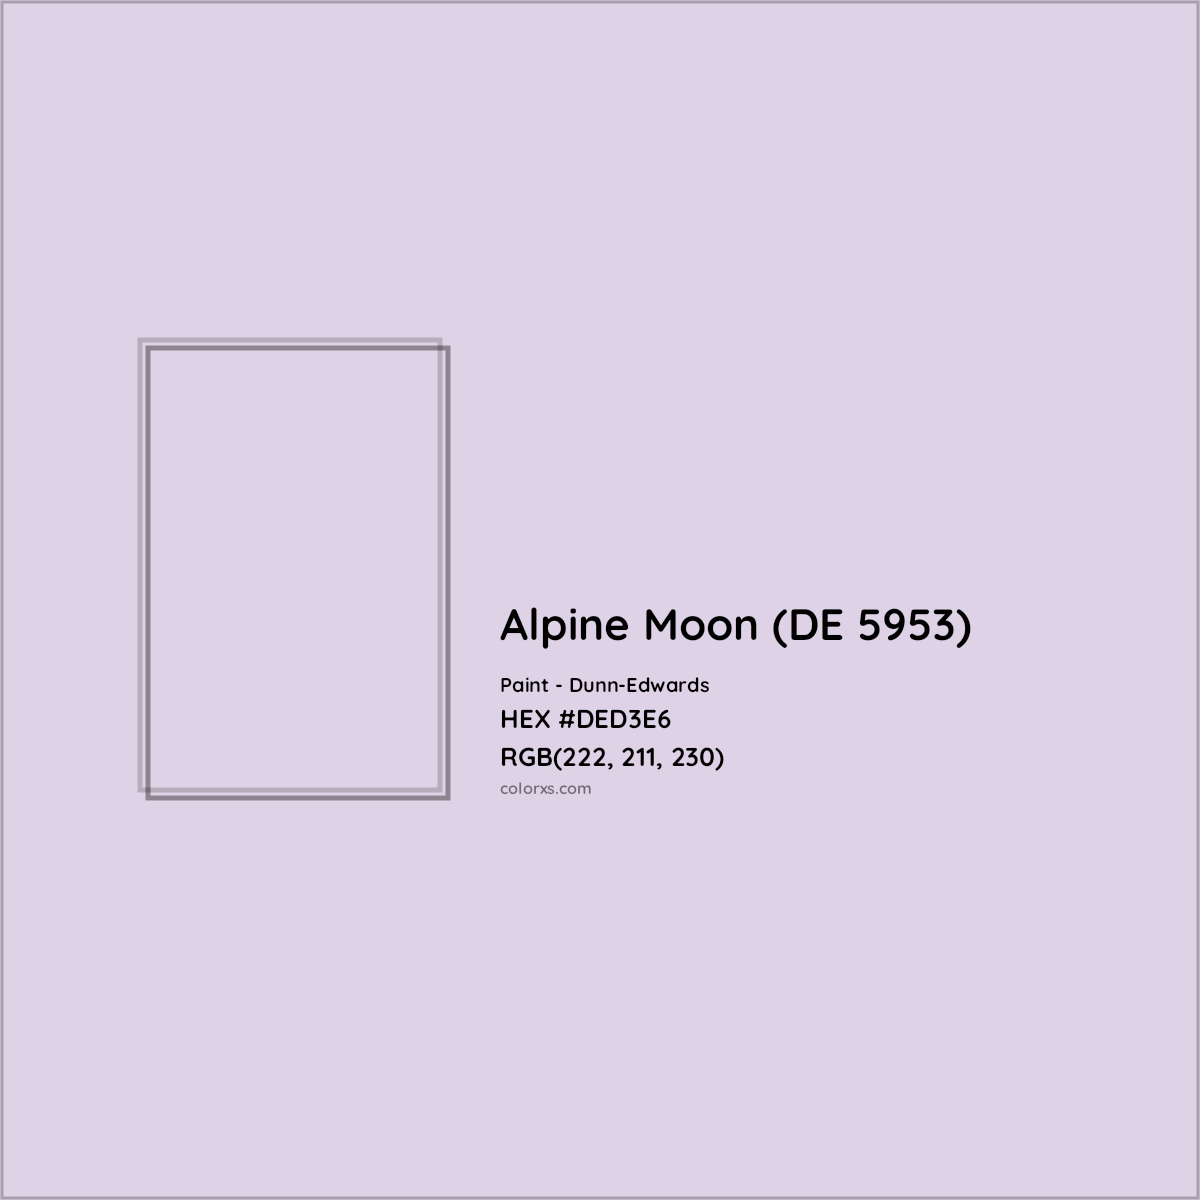 HEX #DED3E6 Alpine Moon (DE 5953) Paint Dunn-Edwards - Color Code